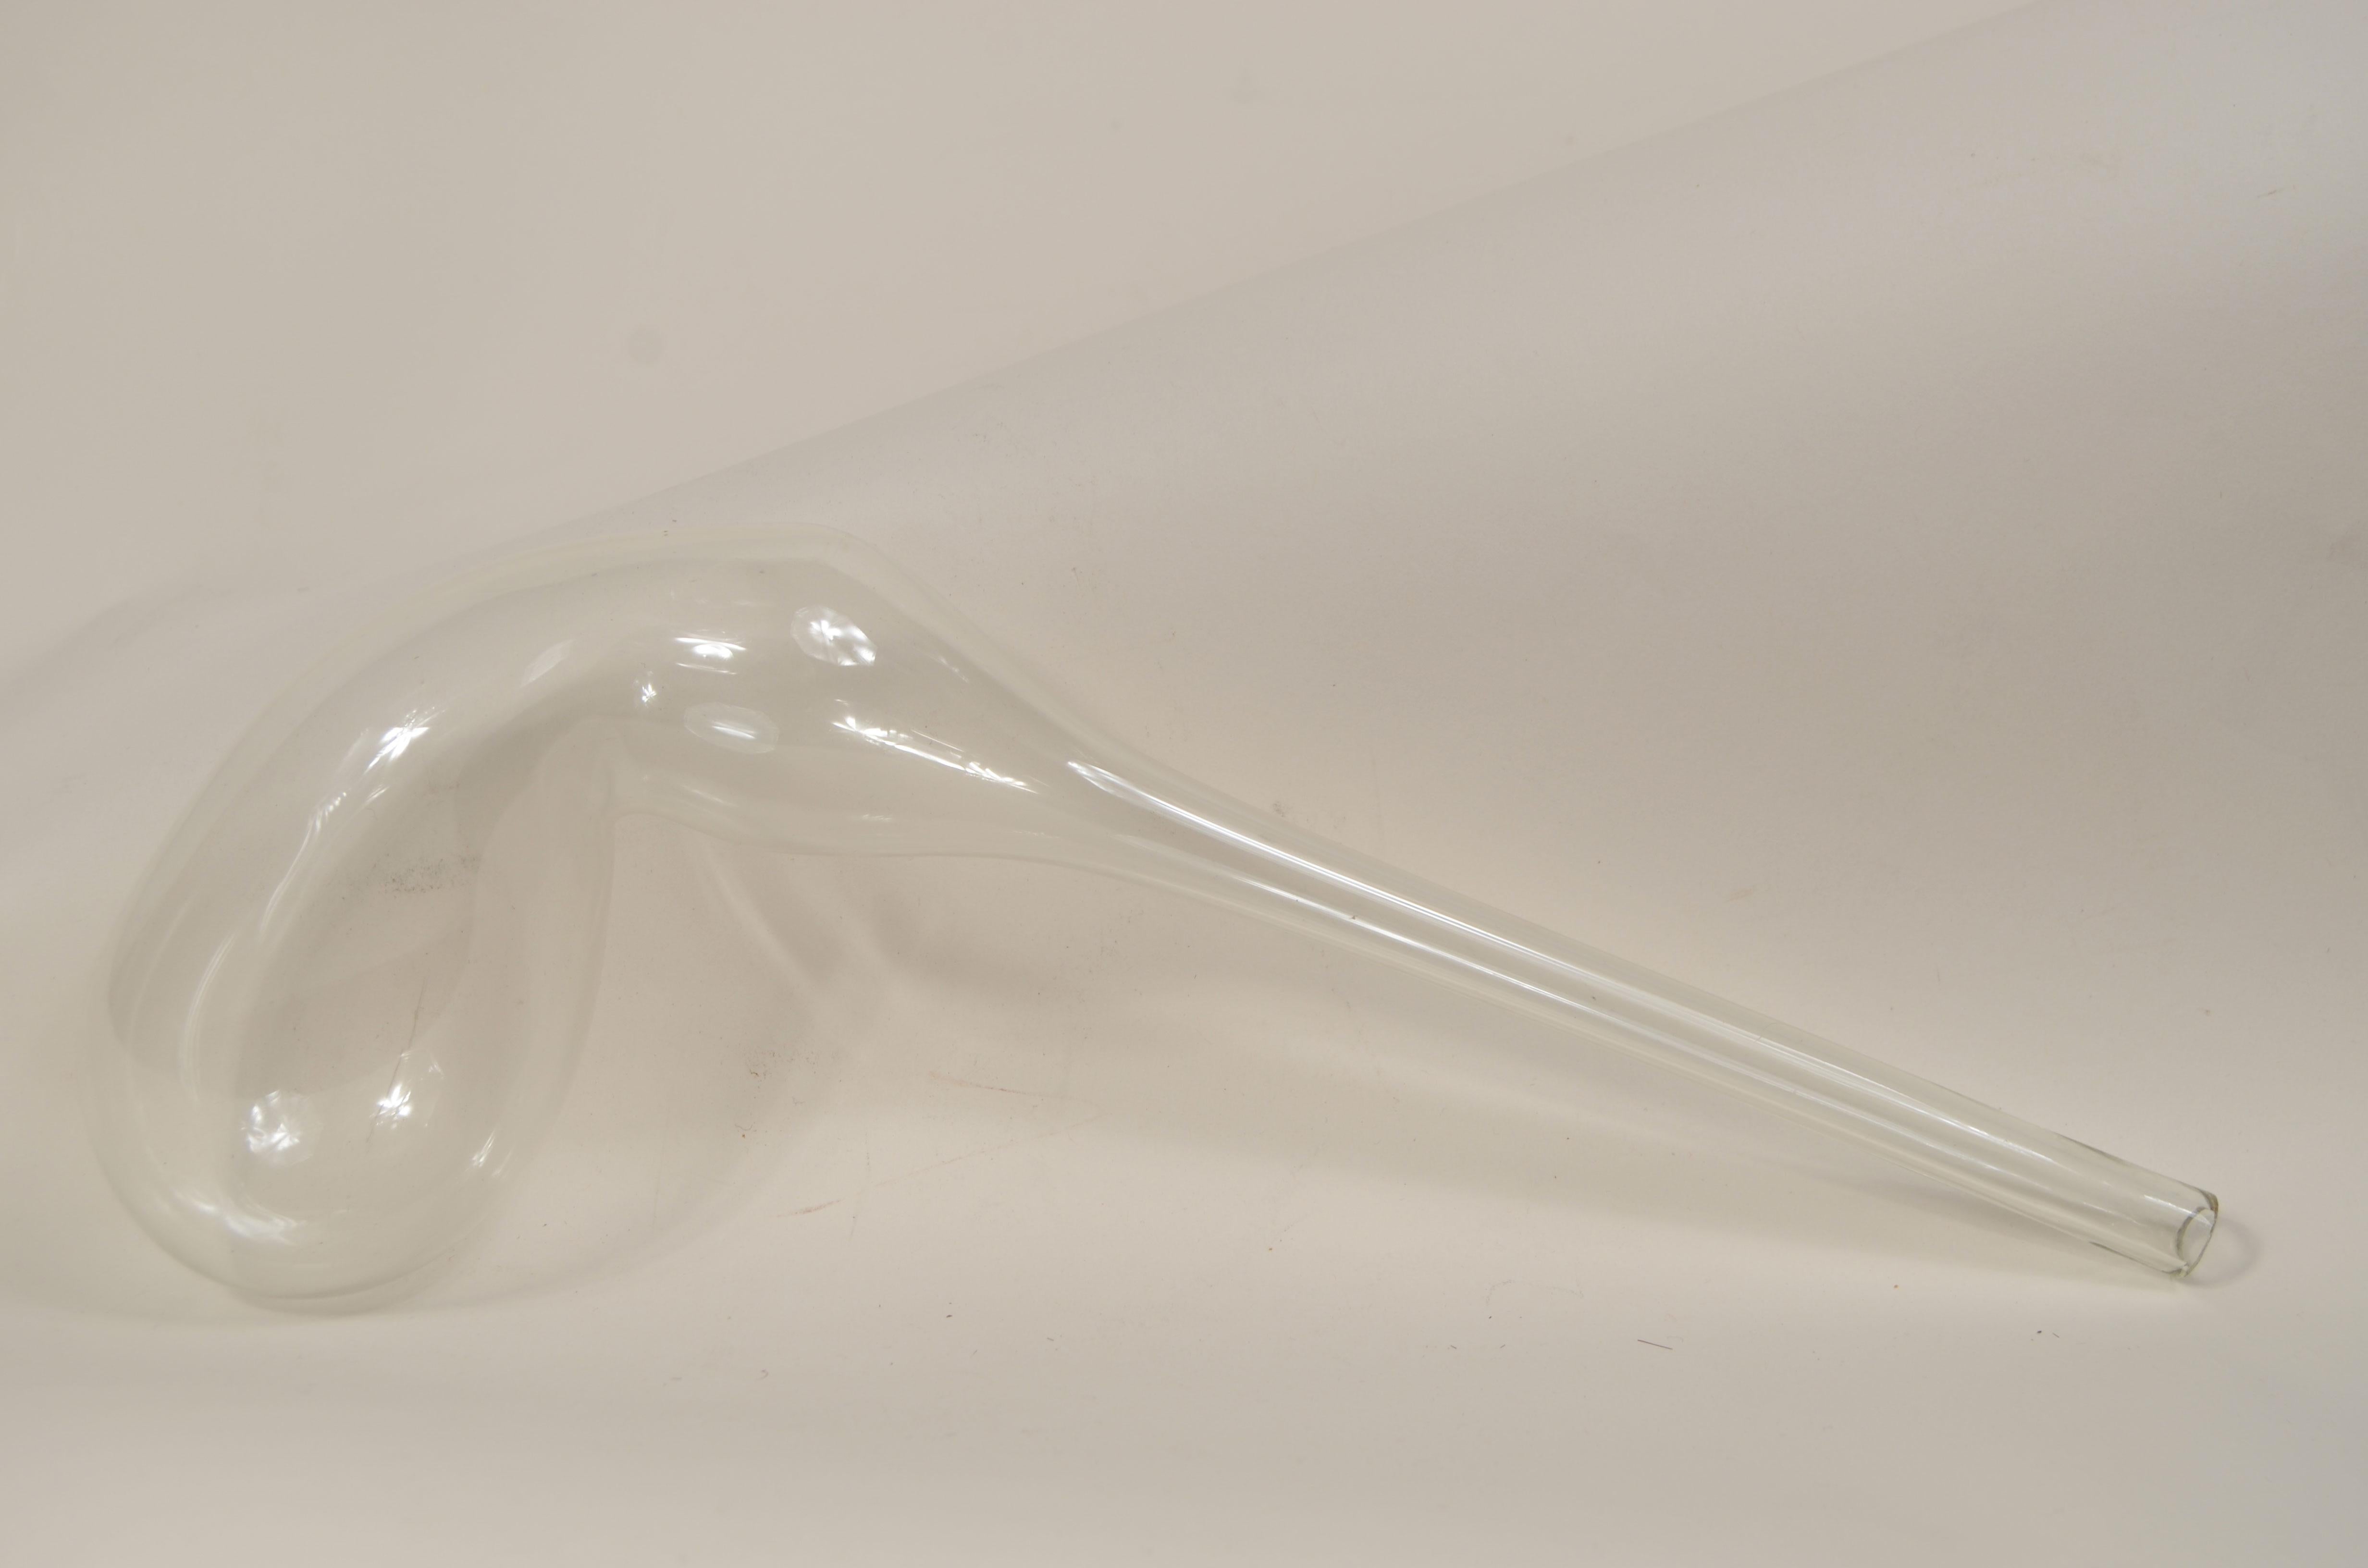 Eine durchsichtige Laborretorte aus geblasenem Glas aus dem frühen 19. Jahrhundert, die für die Destillation verwendet wurde. Sie hat einen eiförmigen Körper und einen langen, nach unten gebogenen Hals, der sich zur Öffnung hin allmählich verengt.